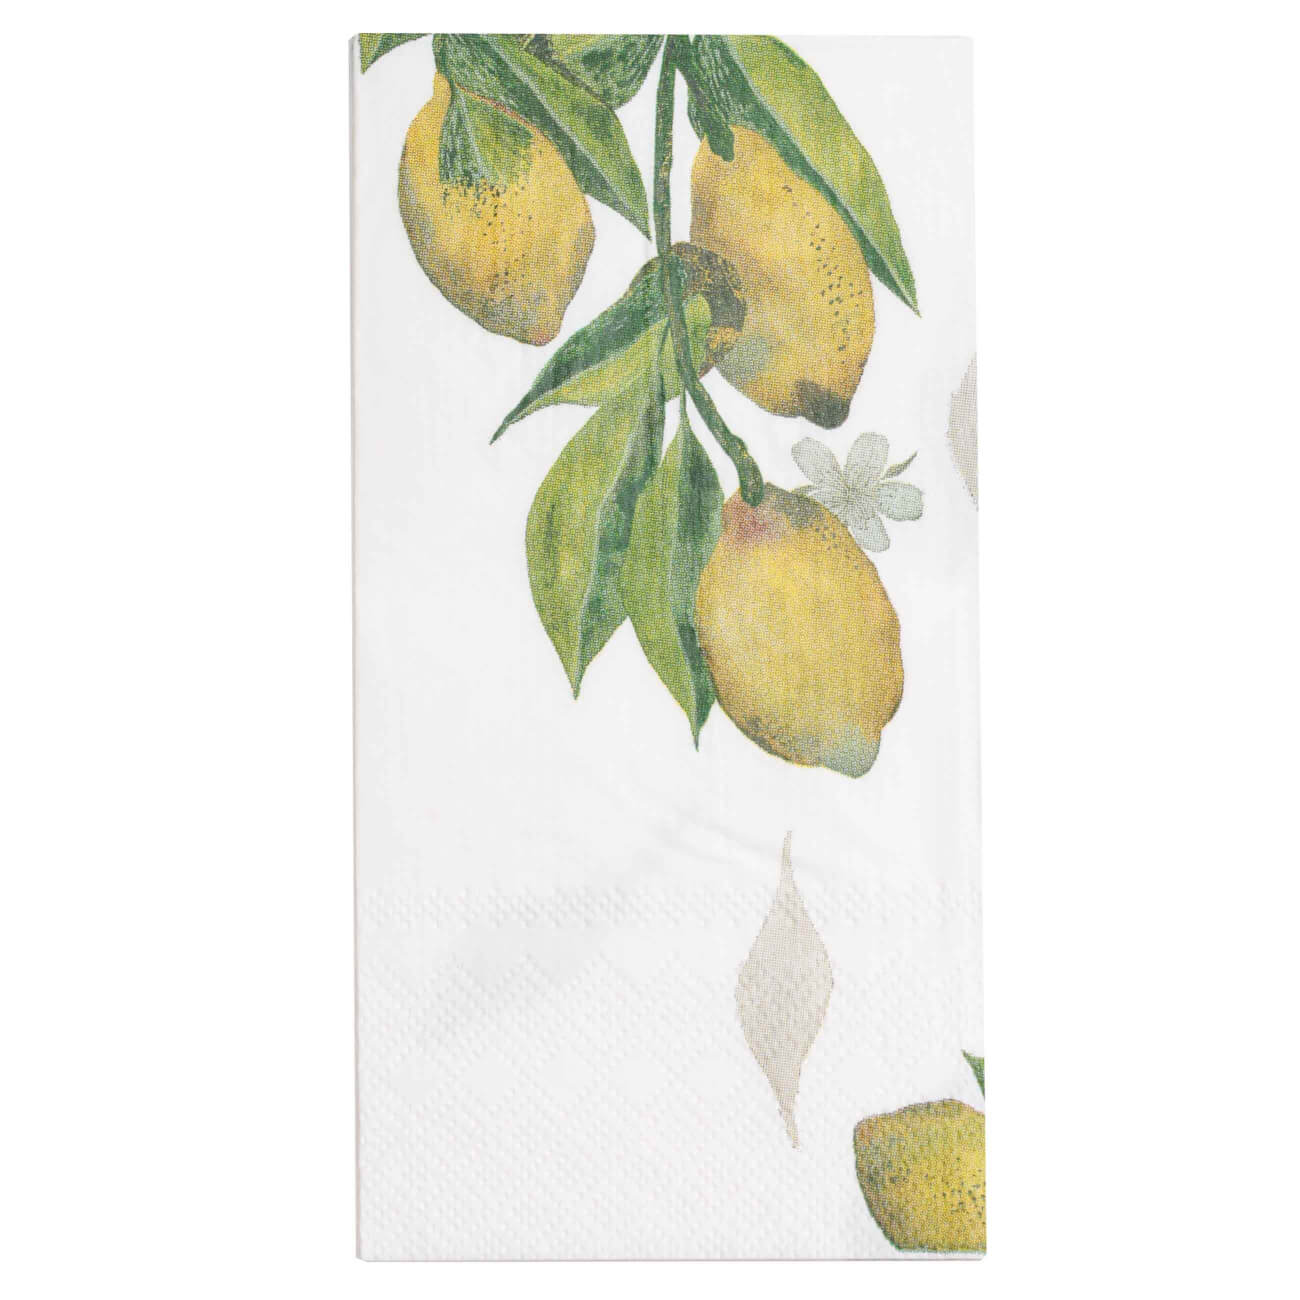 Салфетки бумажные, 33х33 см, 20 шт, прямоугольные, белые, Лимоны на ветке, Sicily in bloom салфетки бумажные bouquet de luxe весёлый праздник 3 слоя 24х24 25 шт